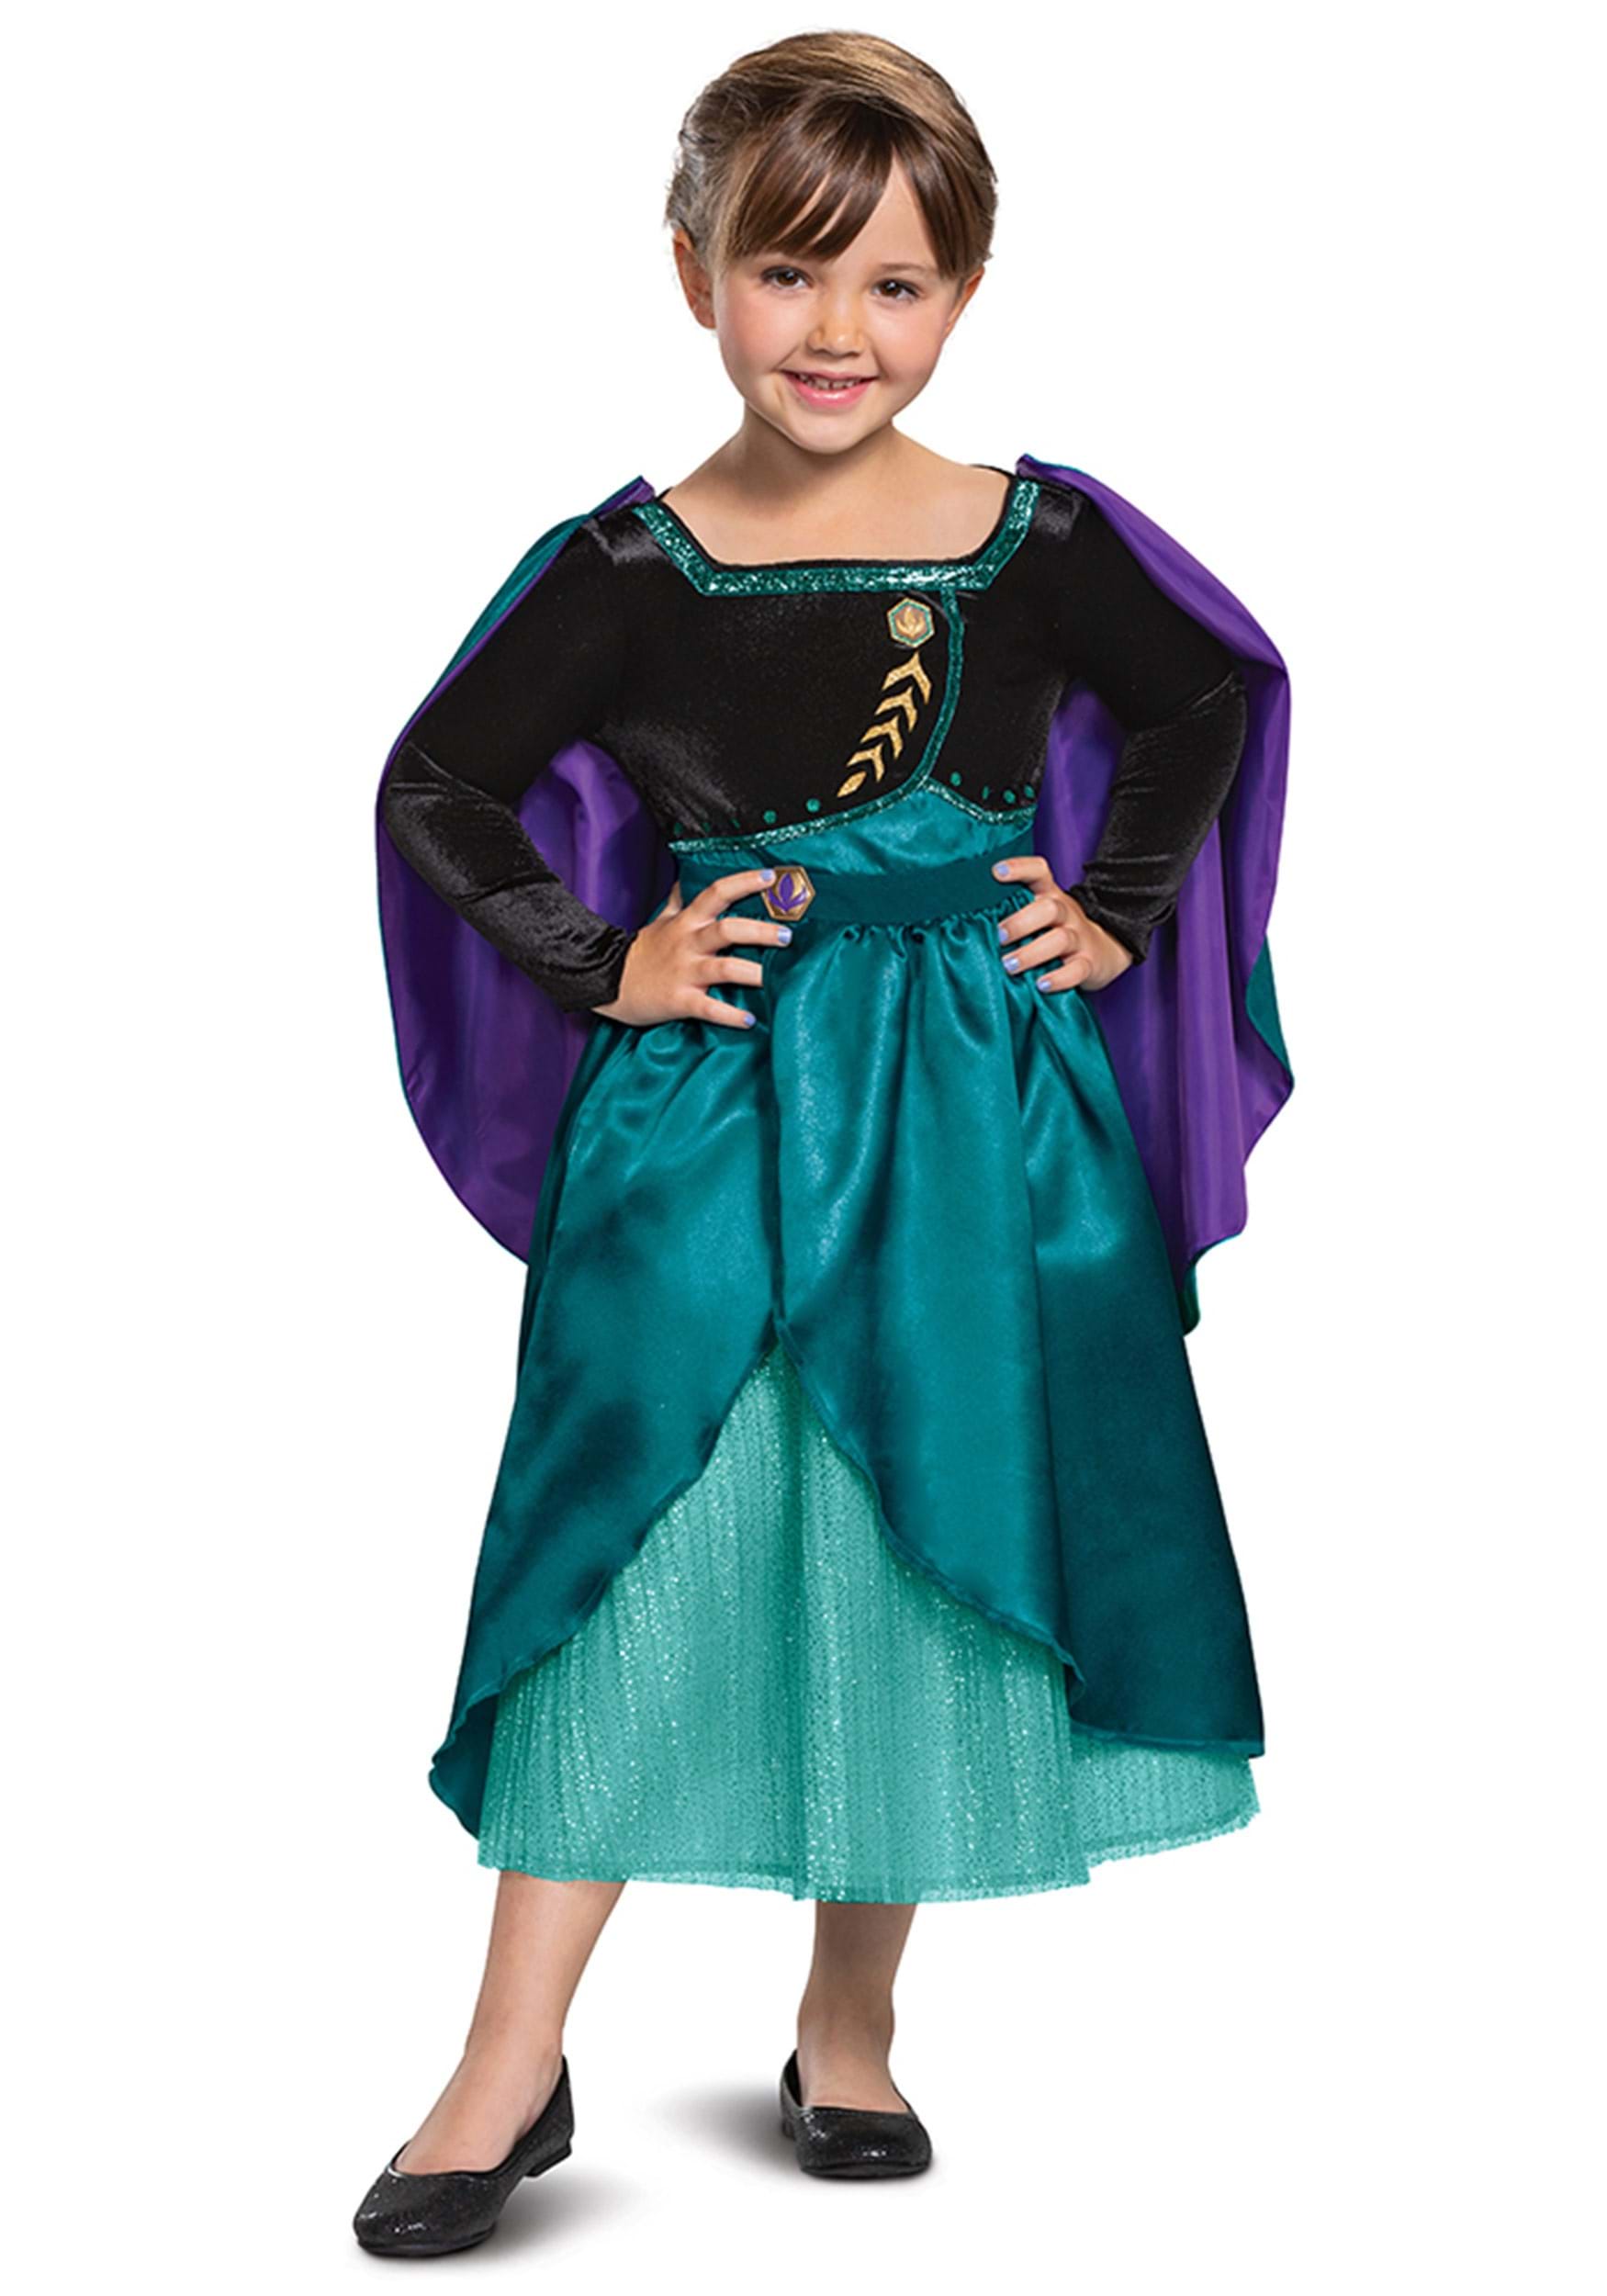 Photos - Fancy Dress Deluxe Disguise Frozen Queen Anna  Kids Costume Black/Green/Purple 